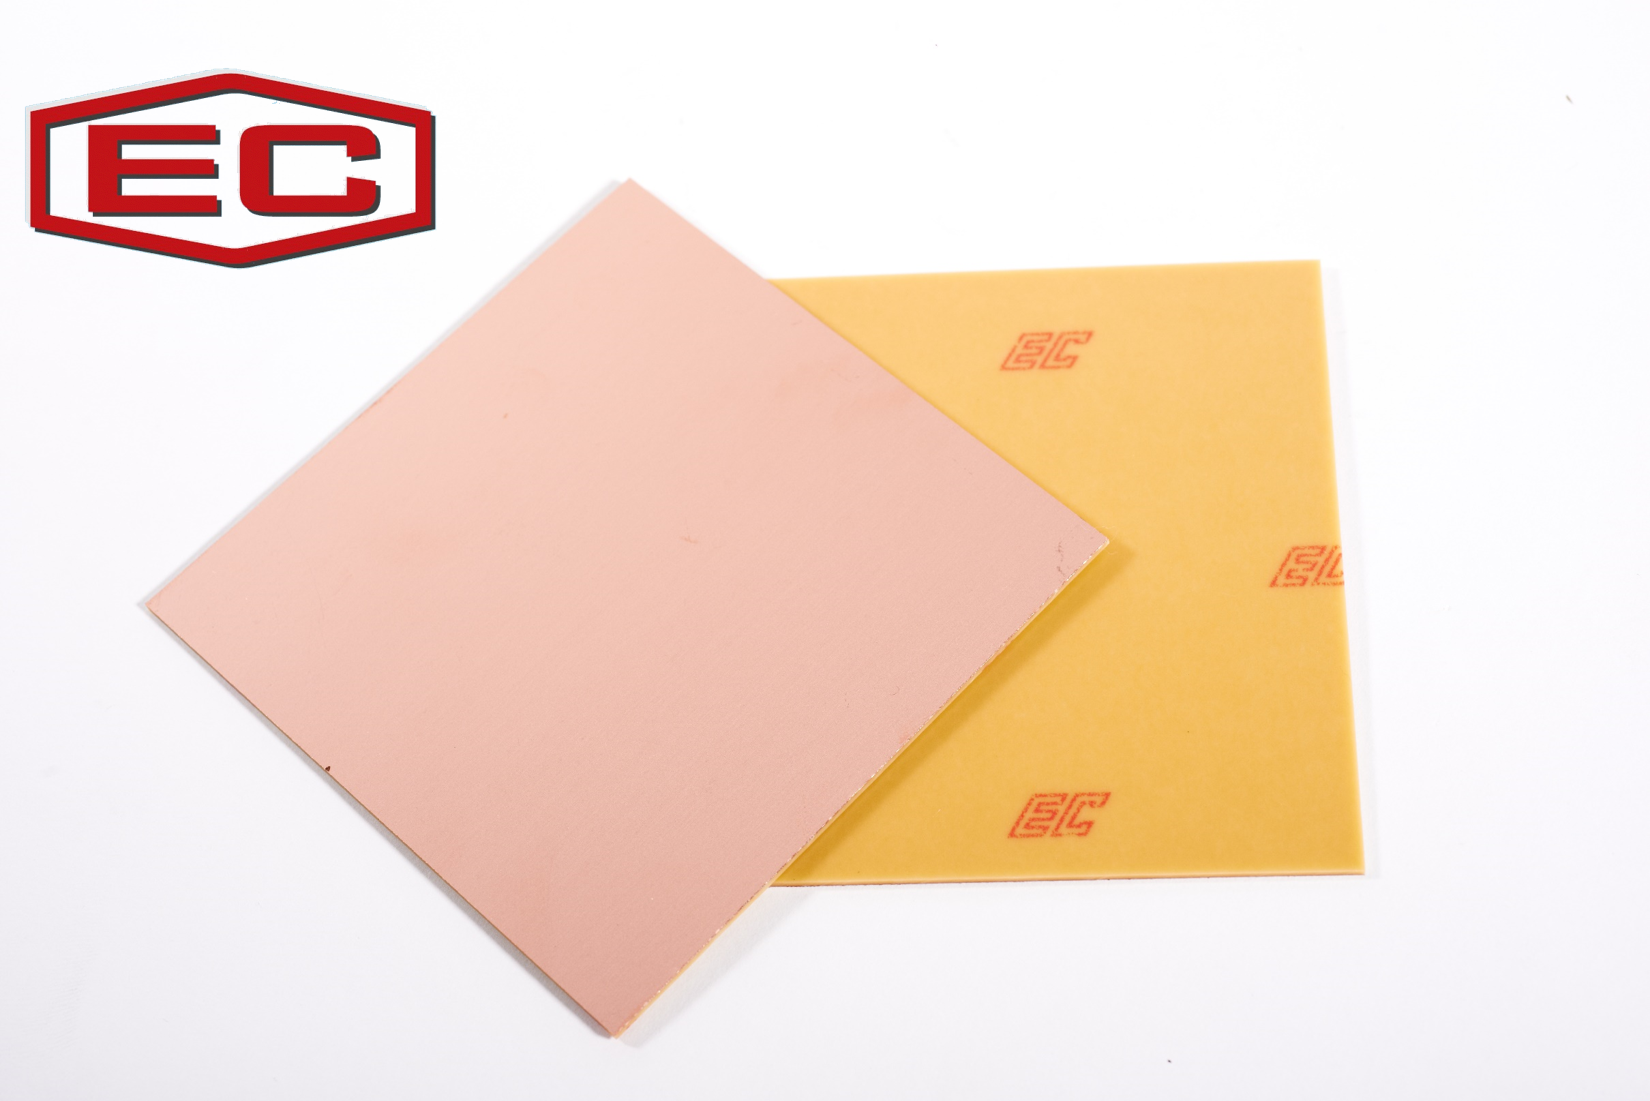 印刷电路板材料-酚醛纸基覆铜箔基板